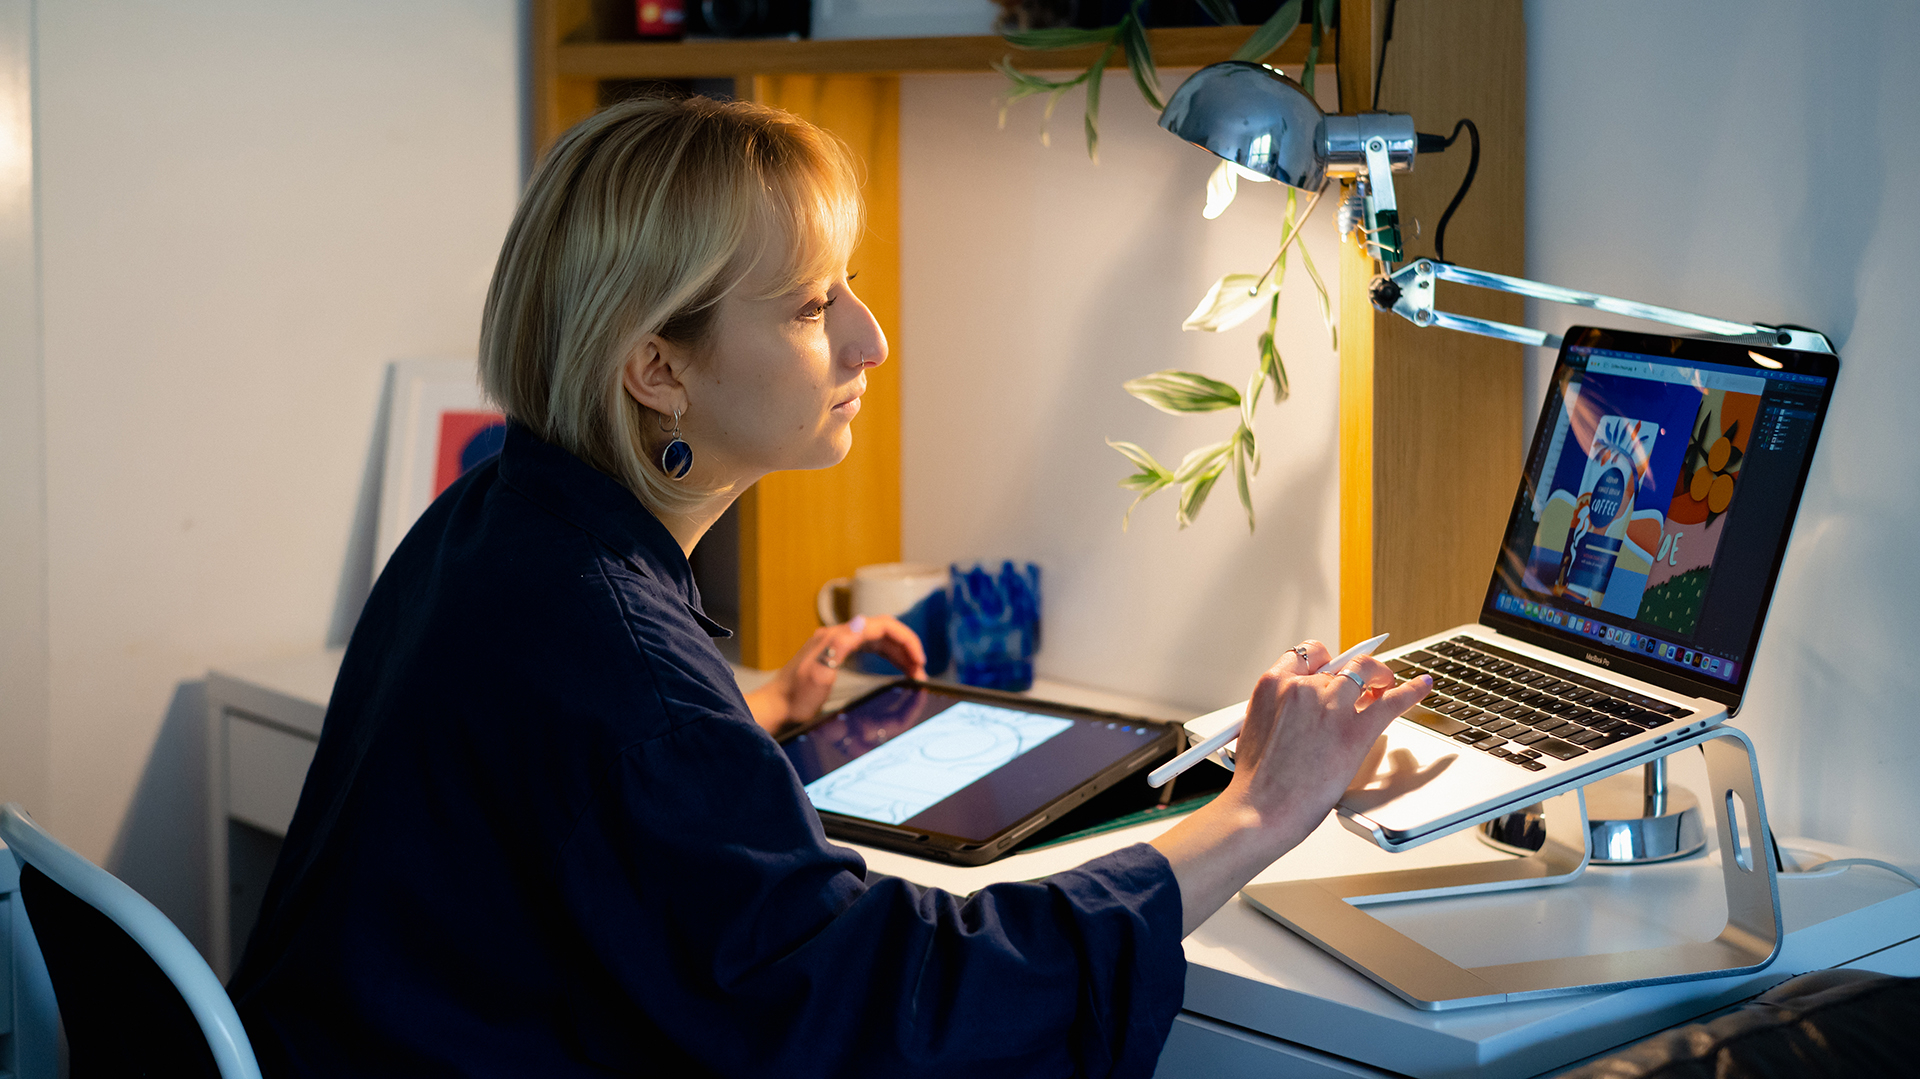 ผู้หญิงนั่งอยู่ที่โต๊ะกำลังพิมพ์บนคอมพิวเตอร์โดยถือปากกาสไตลัสอยู่ในมือ มีแท็บเล็ตอยู่ที่พื้นหลัง